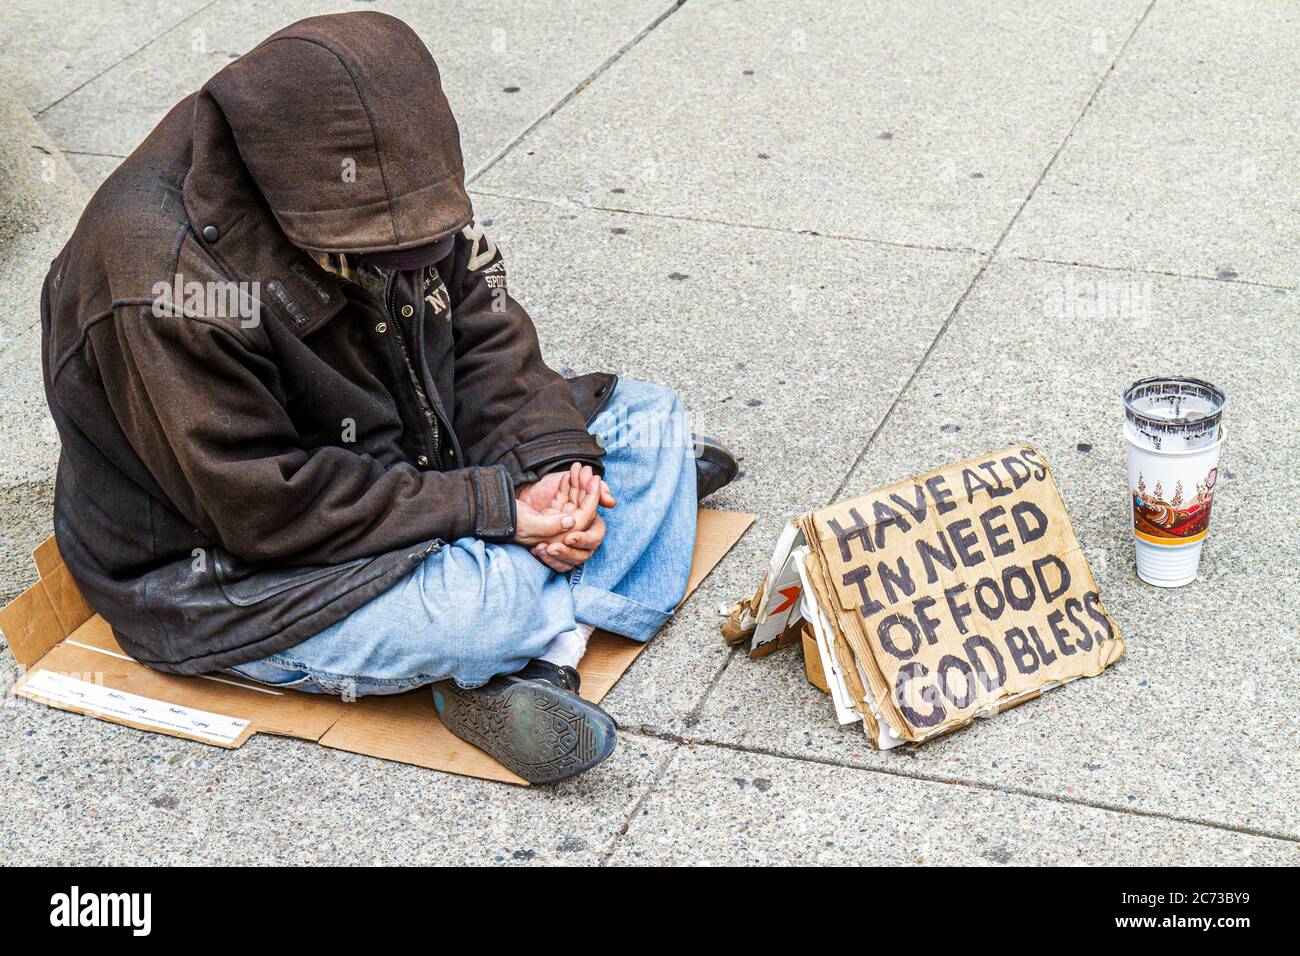 San Francisco California,Chinatown,Grant Street,sans-abri,pauvreté,mendiant,vagabond,charité,signe,SIDA,faim,veste à capuchon,assis sur terre,carton,pap Banque D'Images